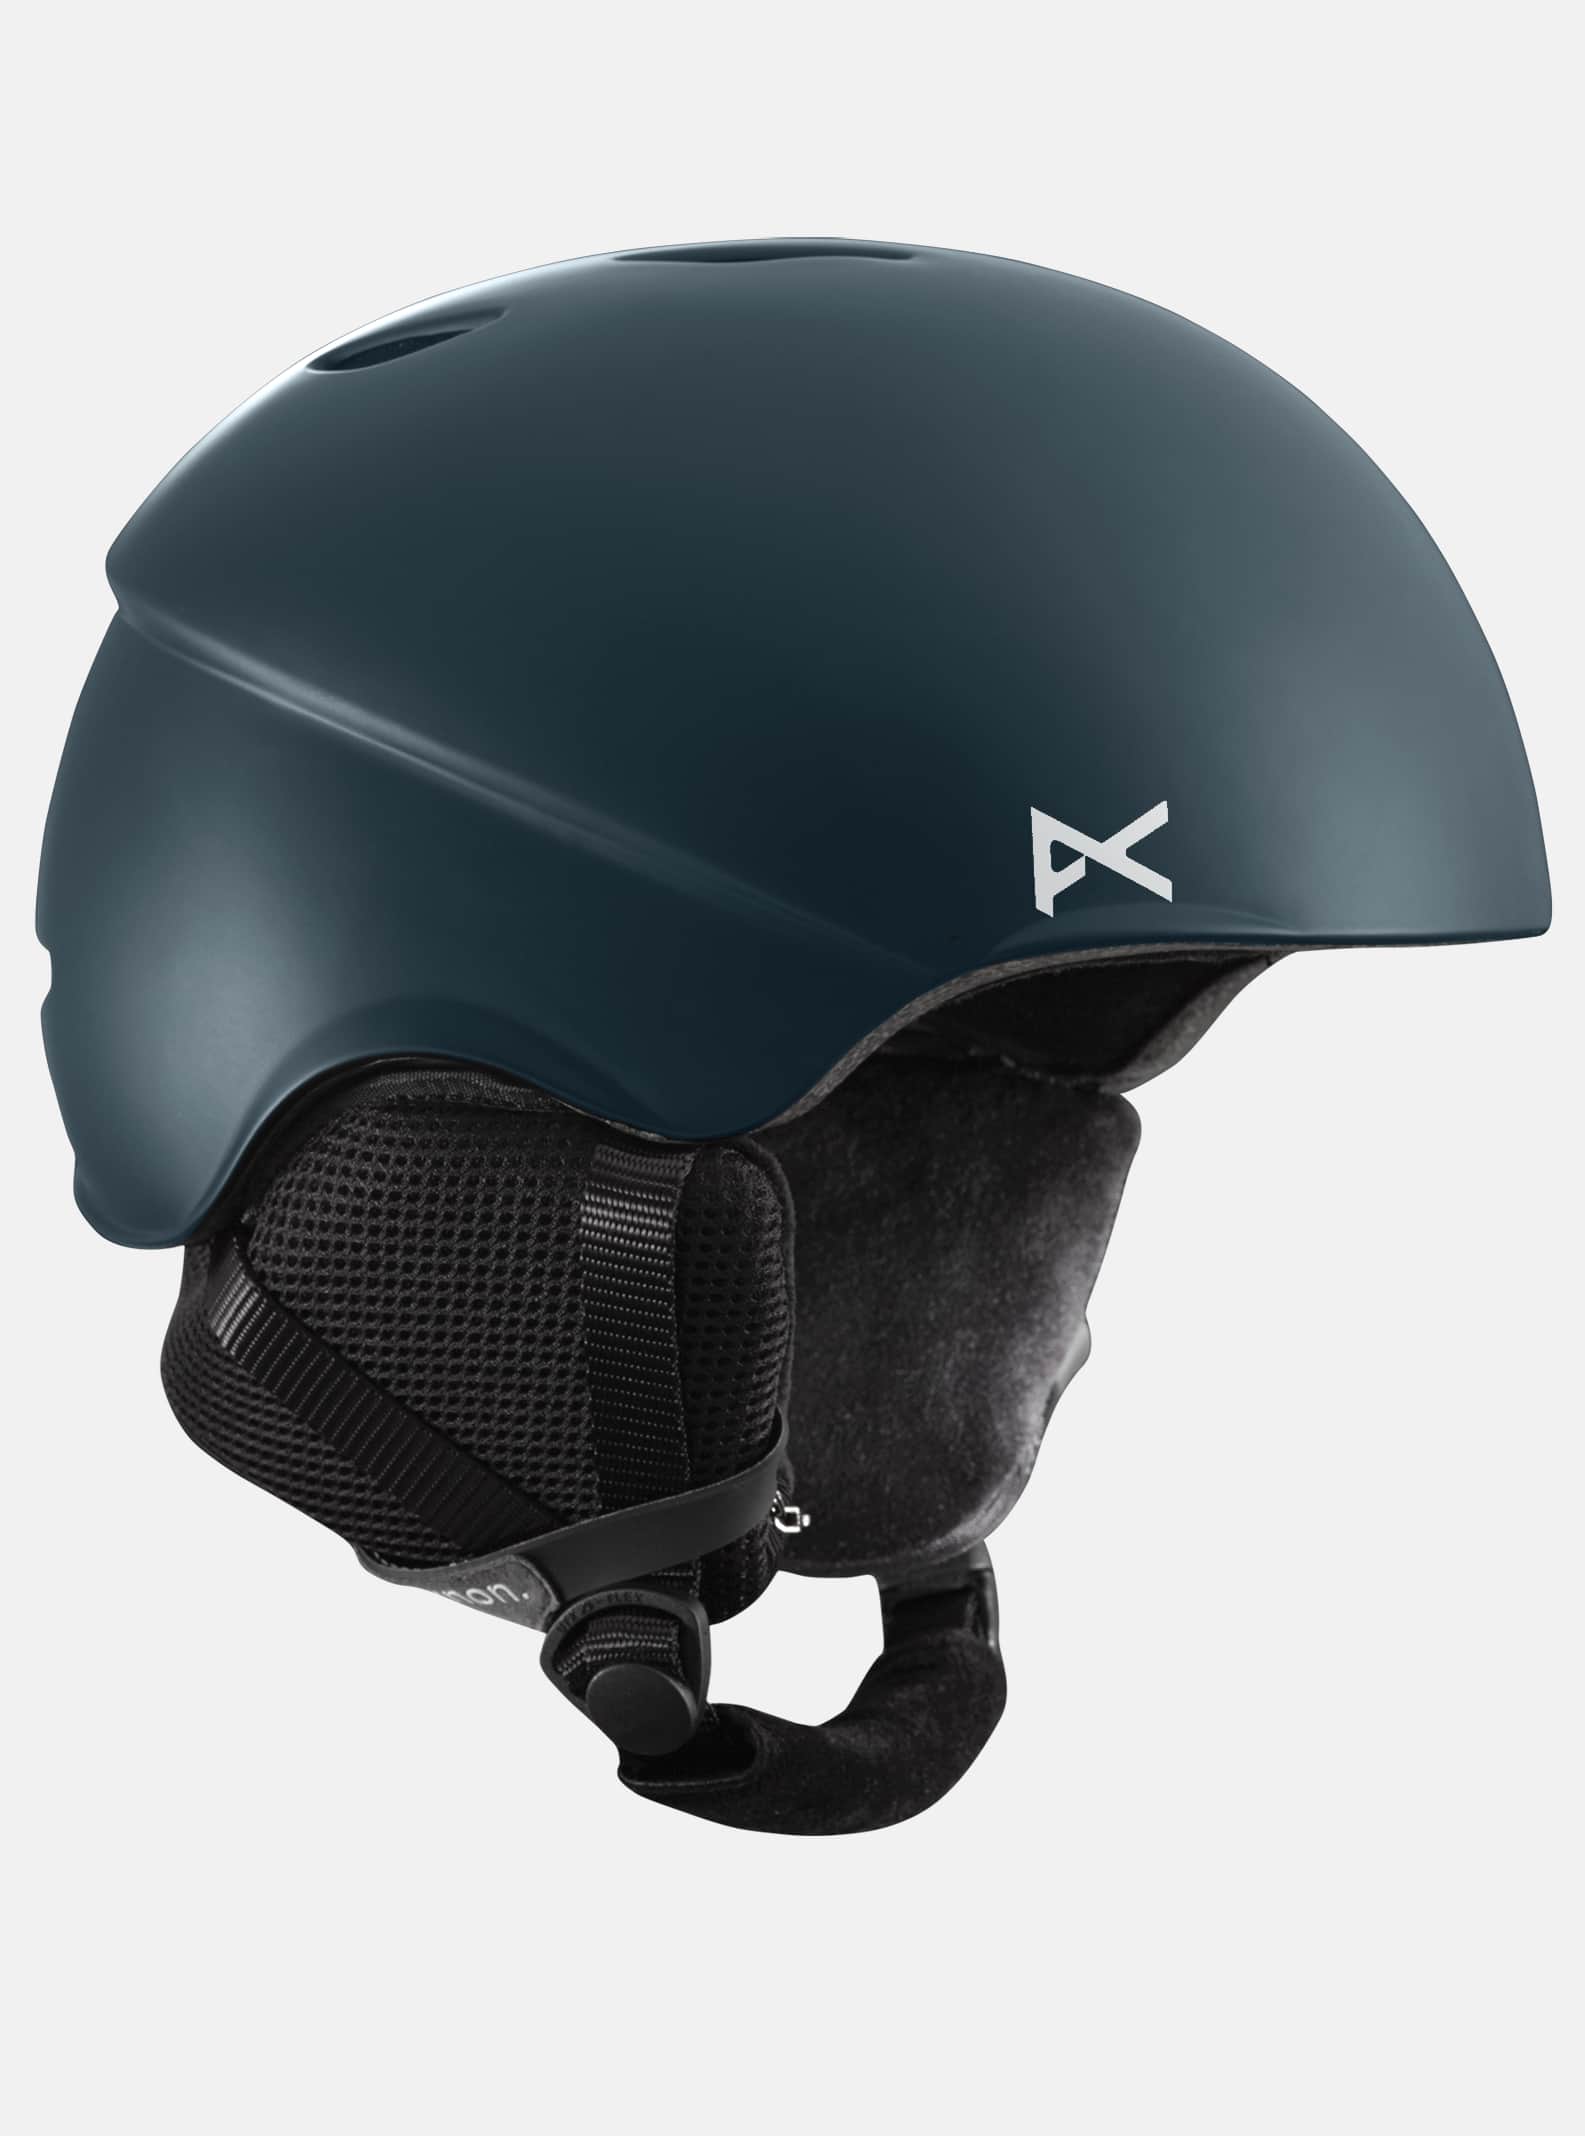 正規認証品!新規格 BURTONバートンヘルメット SKYCAP L60